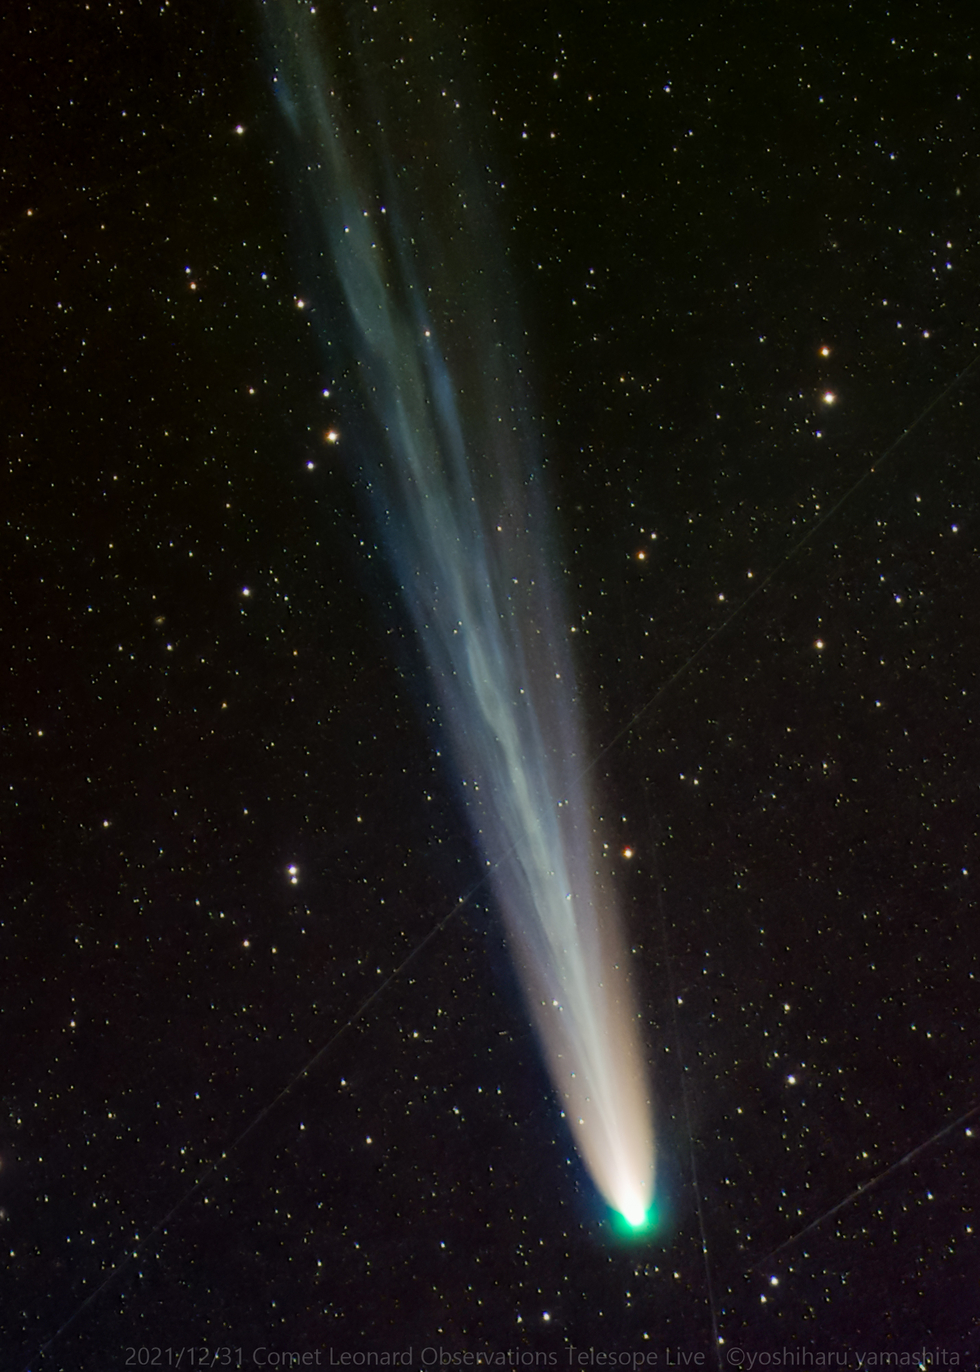 Comet LEONARD